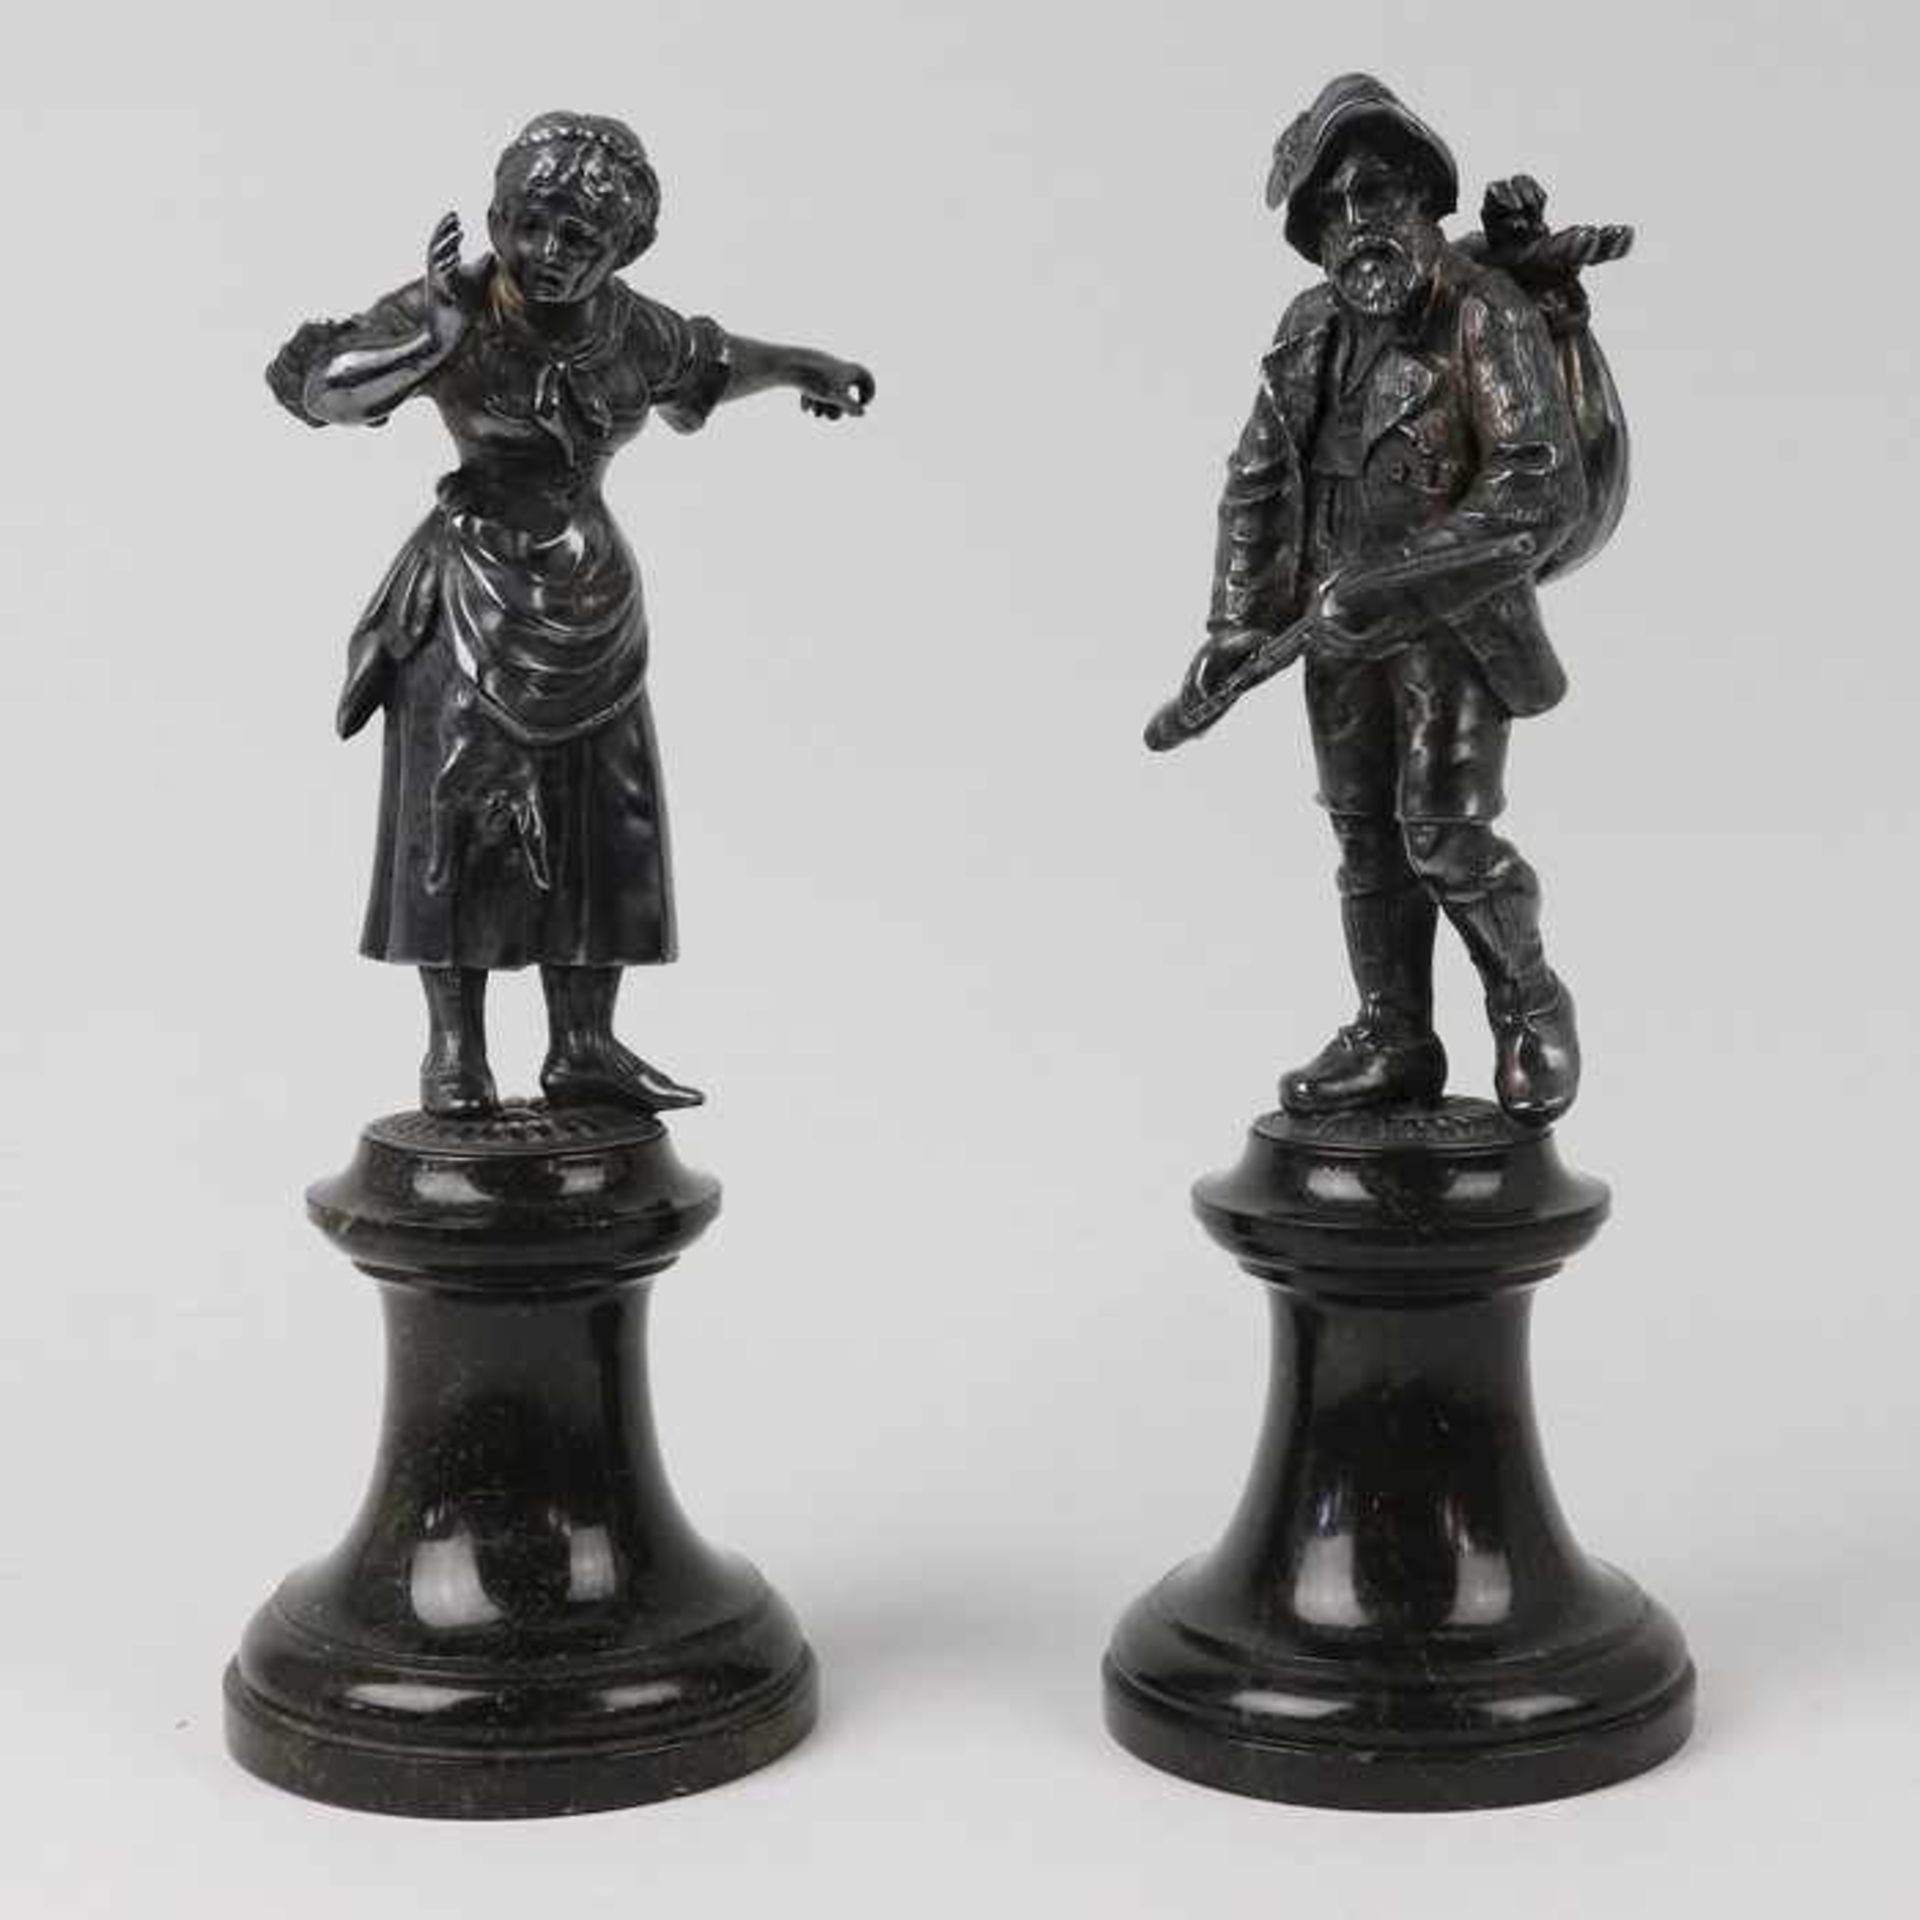 Figurenpaarum 1910/20, Metall, versi., 2 vollplastische Figuren, ein Jäger m. Beute ein Gewehr in - Bild 2 aus 6